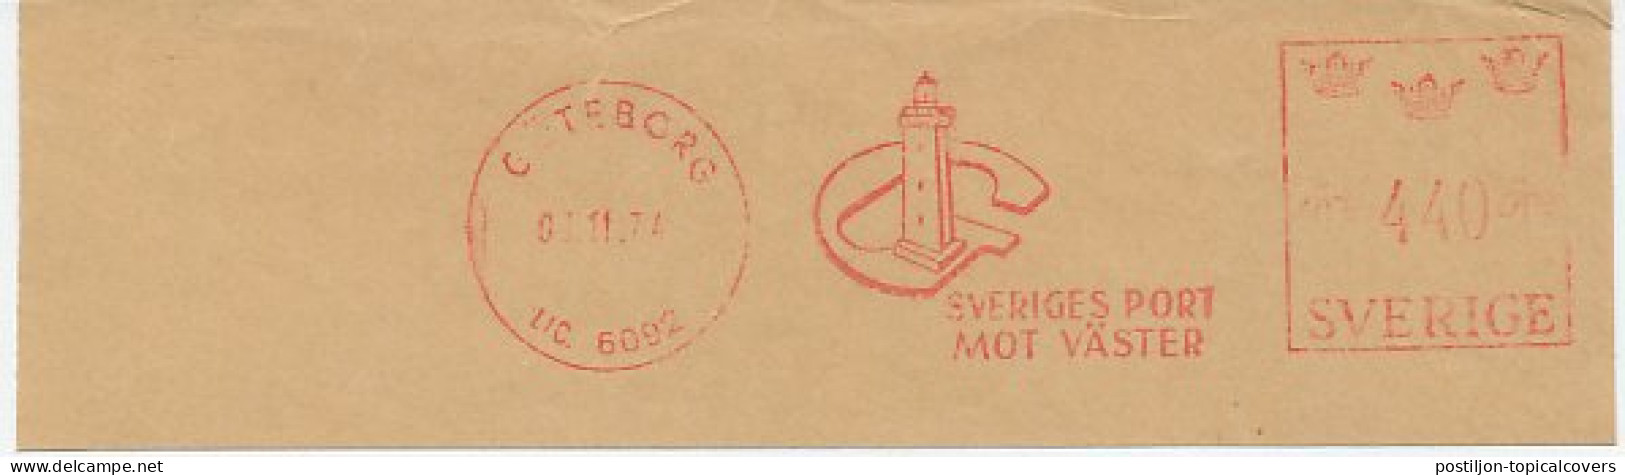 Meter Cut Sweden 1974 Lighthouse - Goteborg - Phares